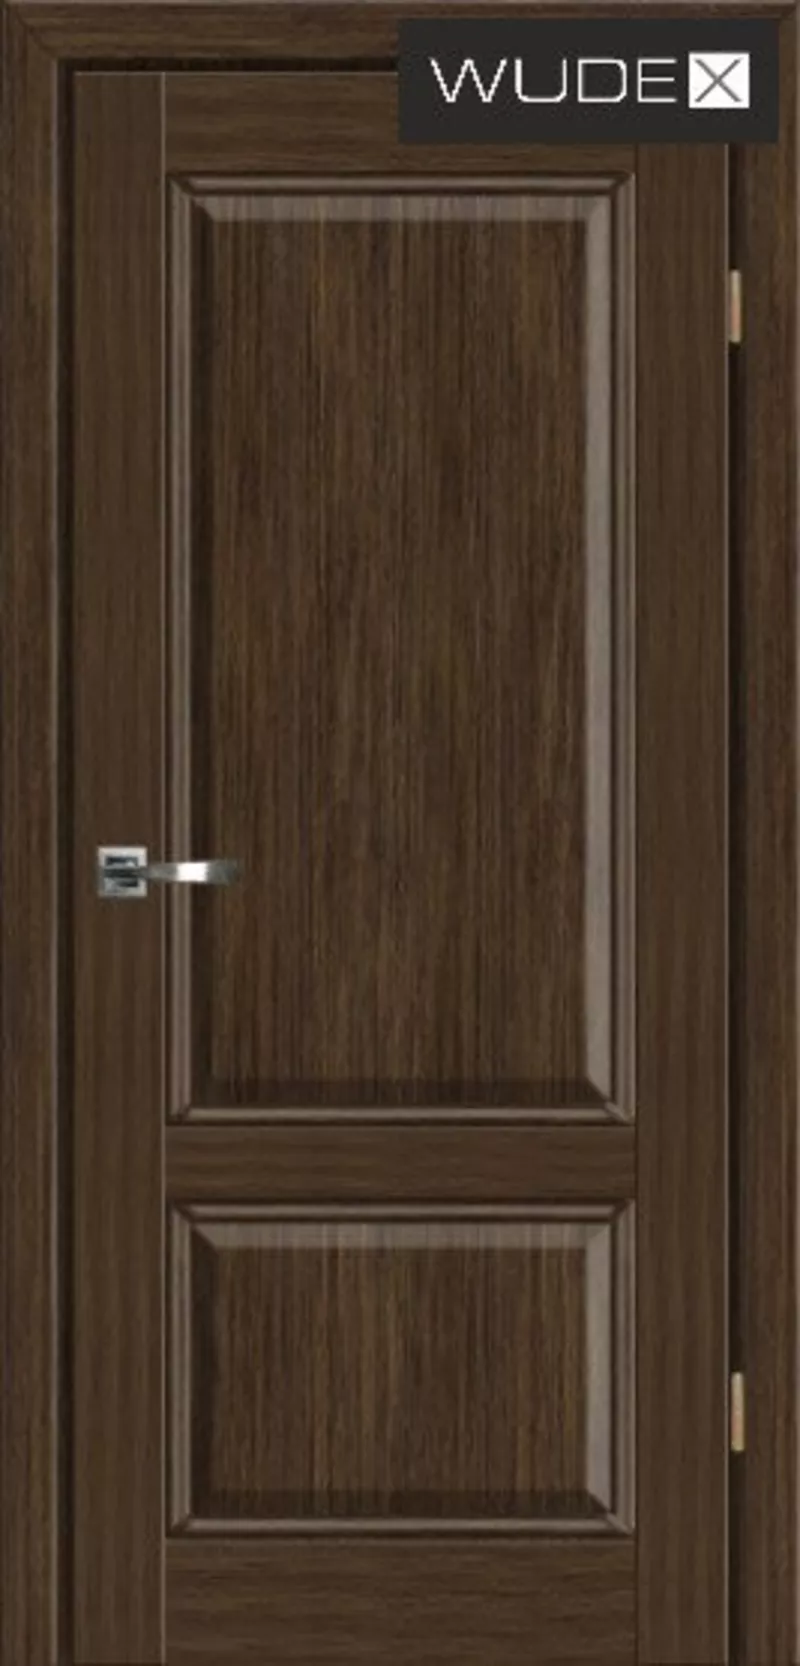 Двери межкомнатные WUDEX (ВУДЕКС двери) - шпон натуральный 2